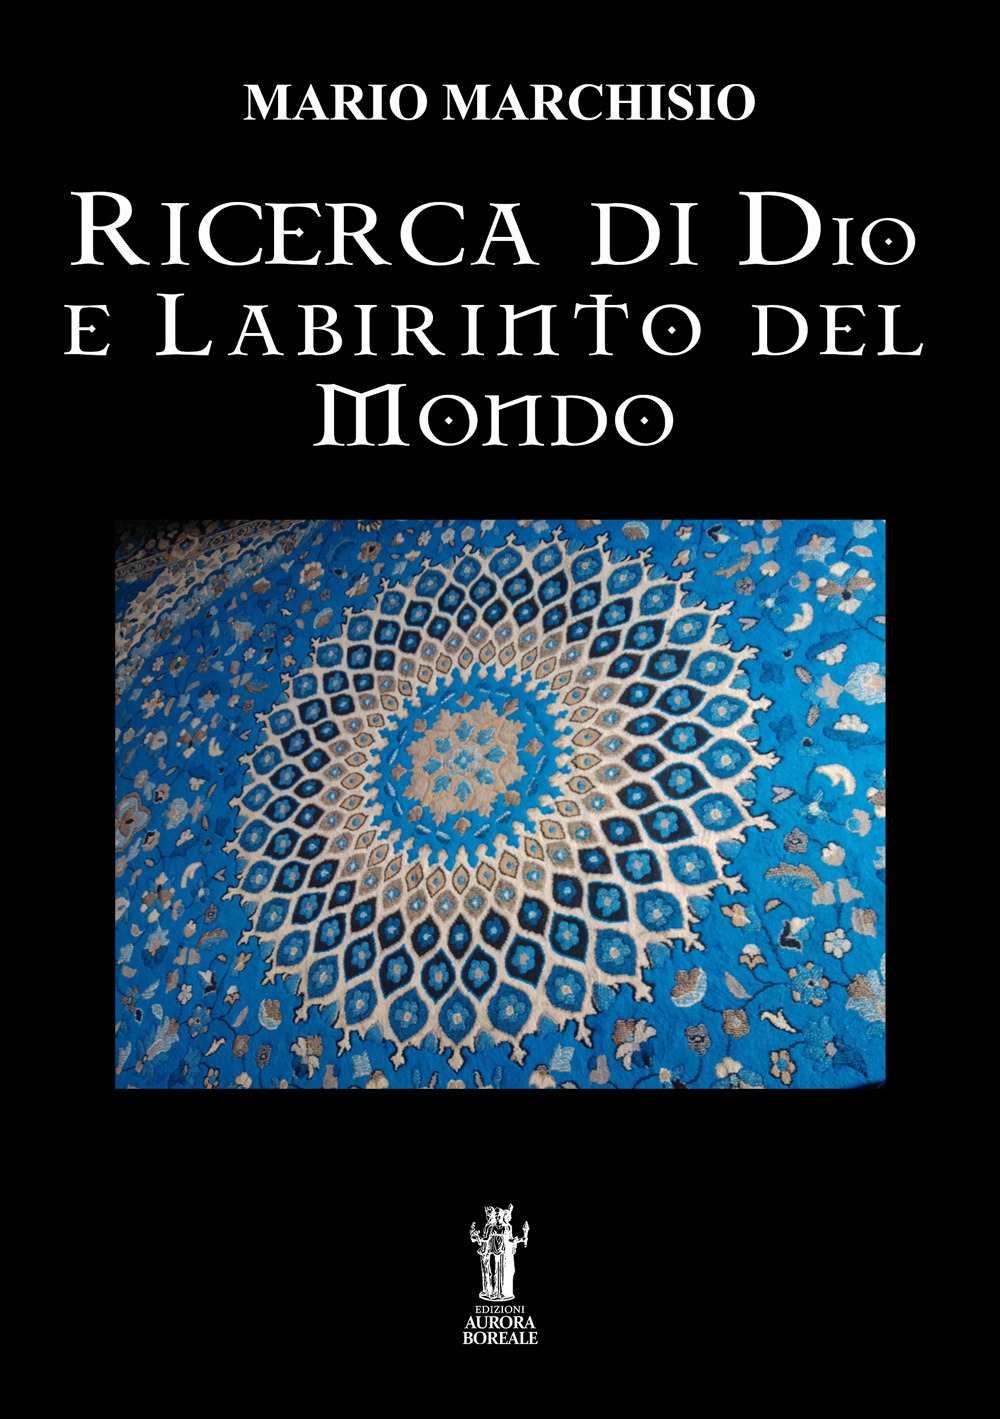 Libri Mario Marchisio - Ricerca Di Dio E Labirinto Del Mondo NUOVO SIGILLATO, EDIZIONE DEL 09/10/2020 SUBITO DISPONIBILE